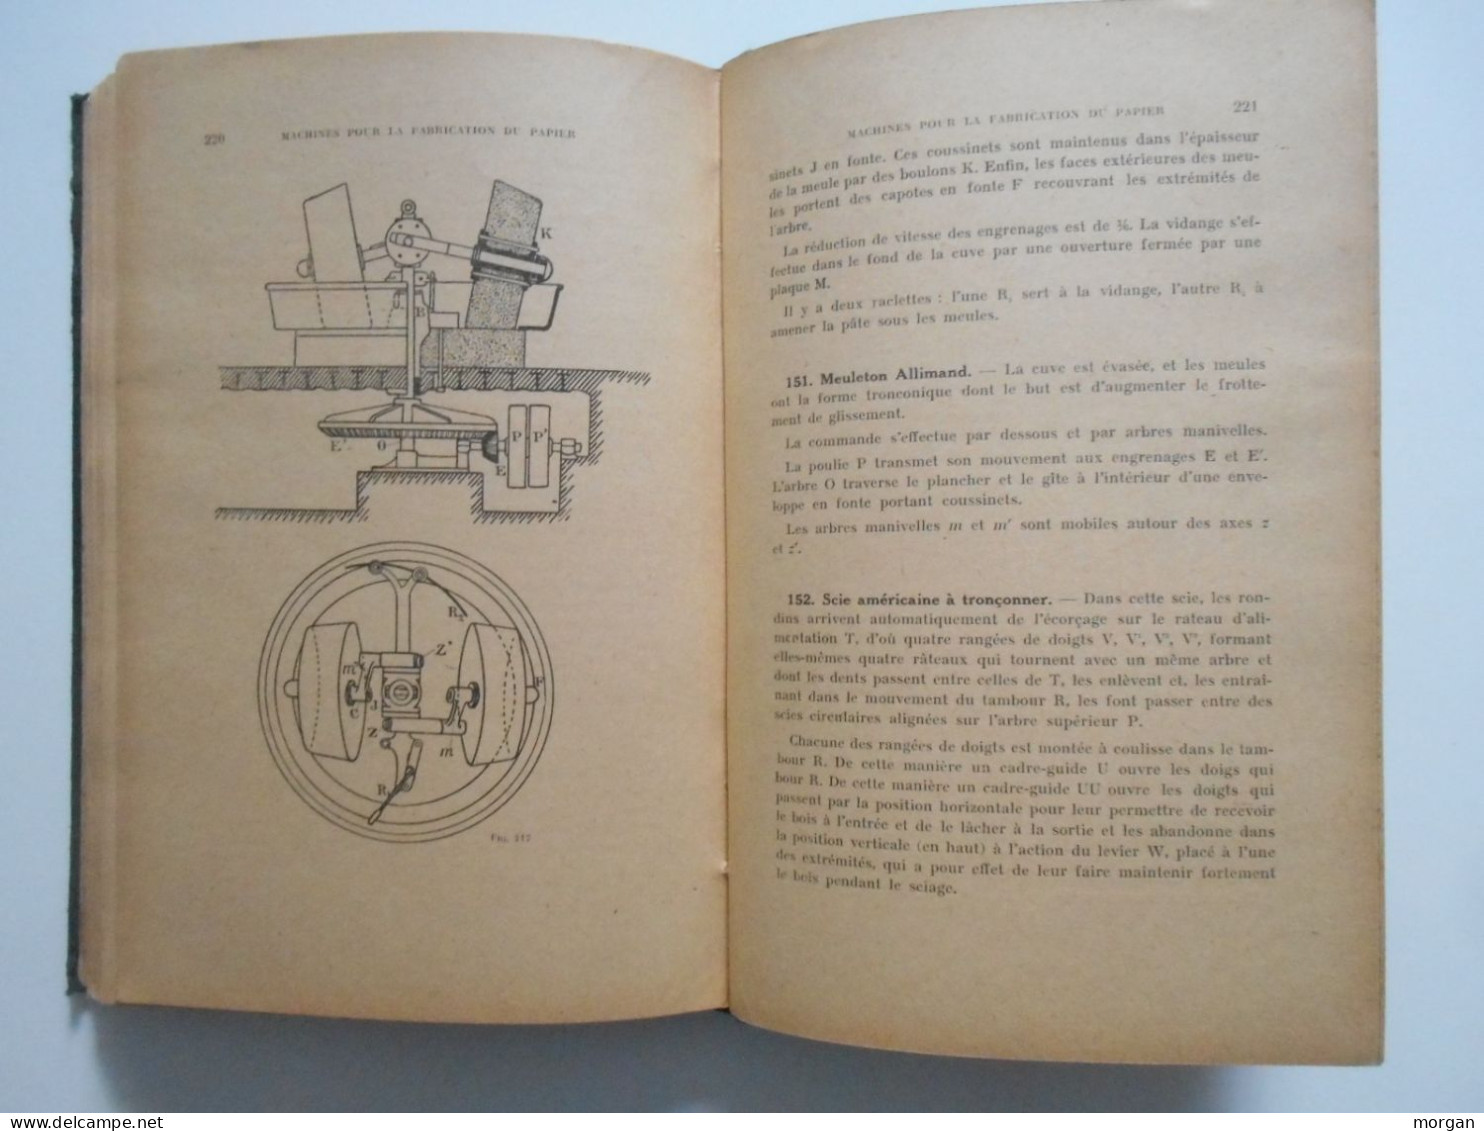 MACHINES POUR LA FABRICATION DU PAPIER, 1922, FAVIER / ARIBERT, ECOLE DE PAPETERIE DE GRENOBLE - Zonder Classificatie